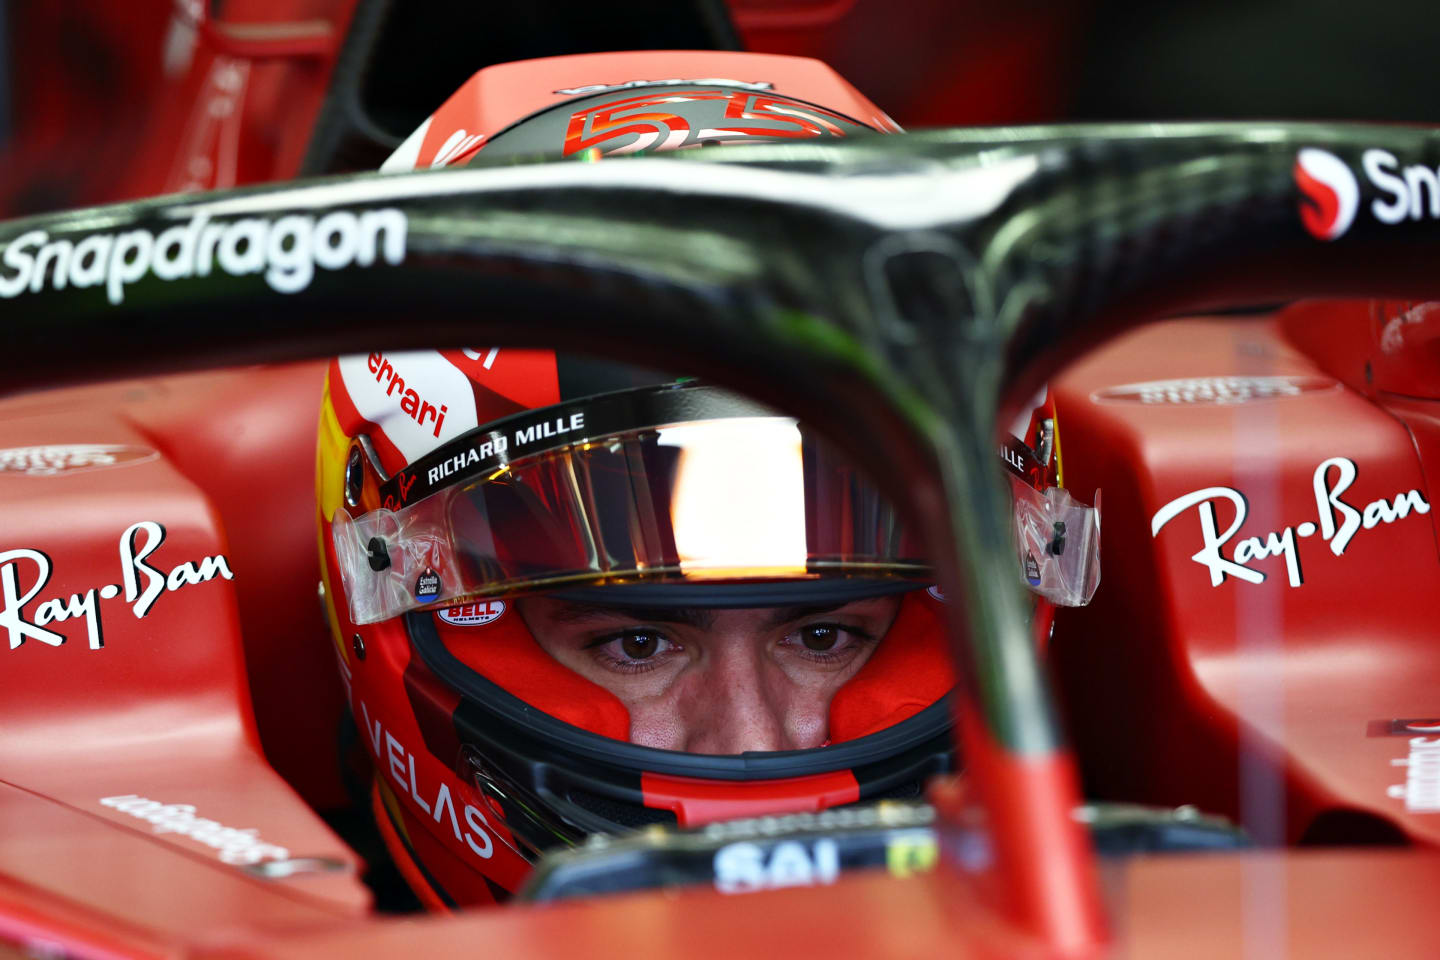 BAHRAIN, BAHRAIN - MARCH 12: Carlos Sainz of Spain and Ferrari prepares to drive in the garage